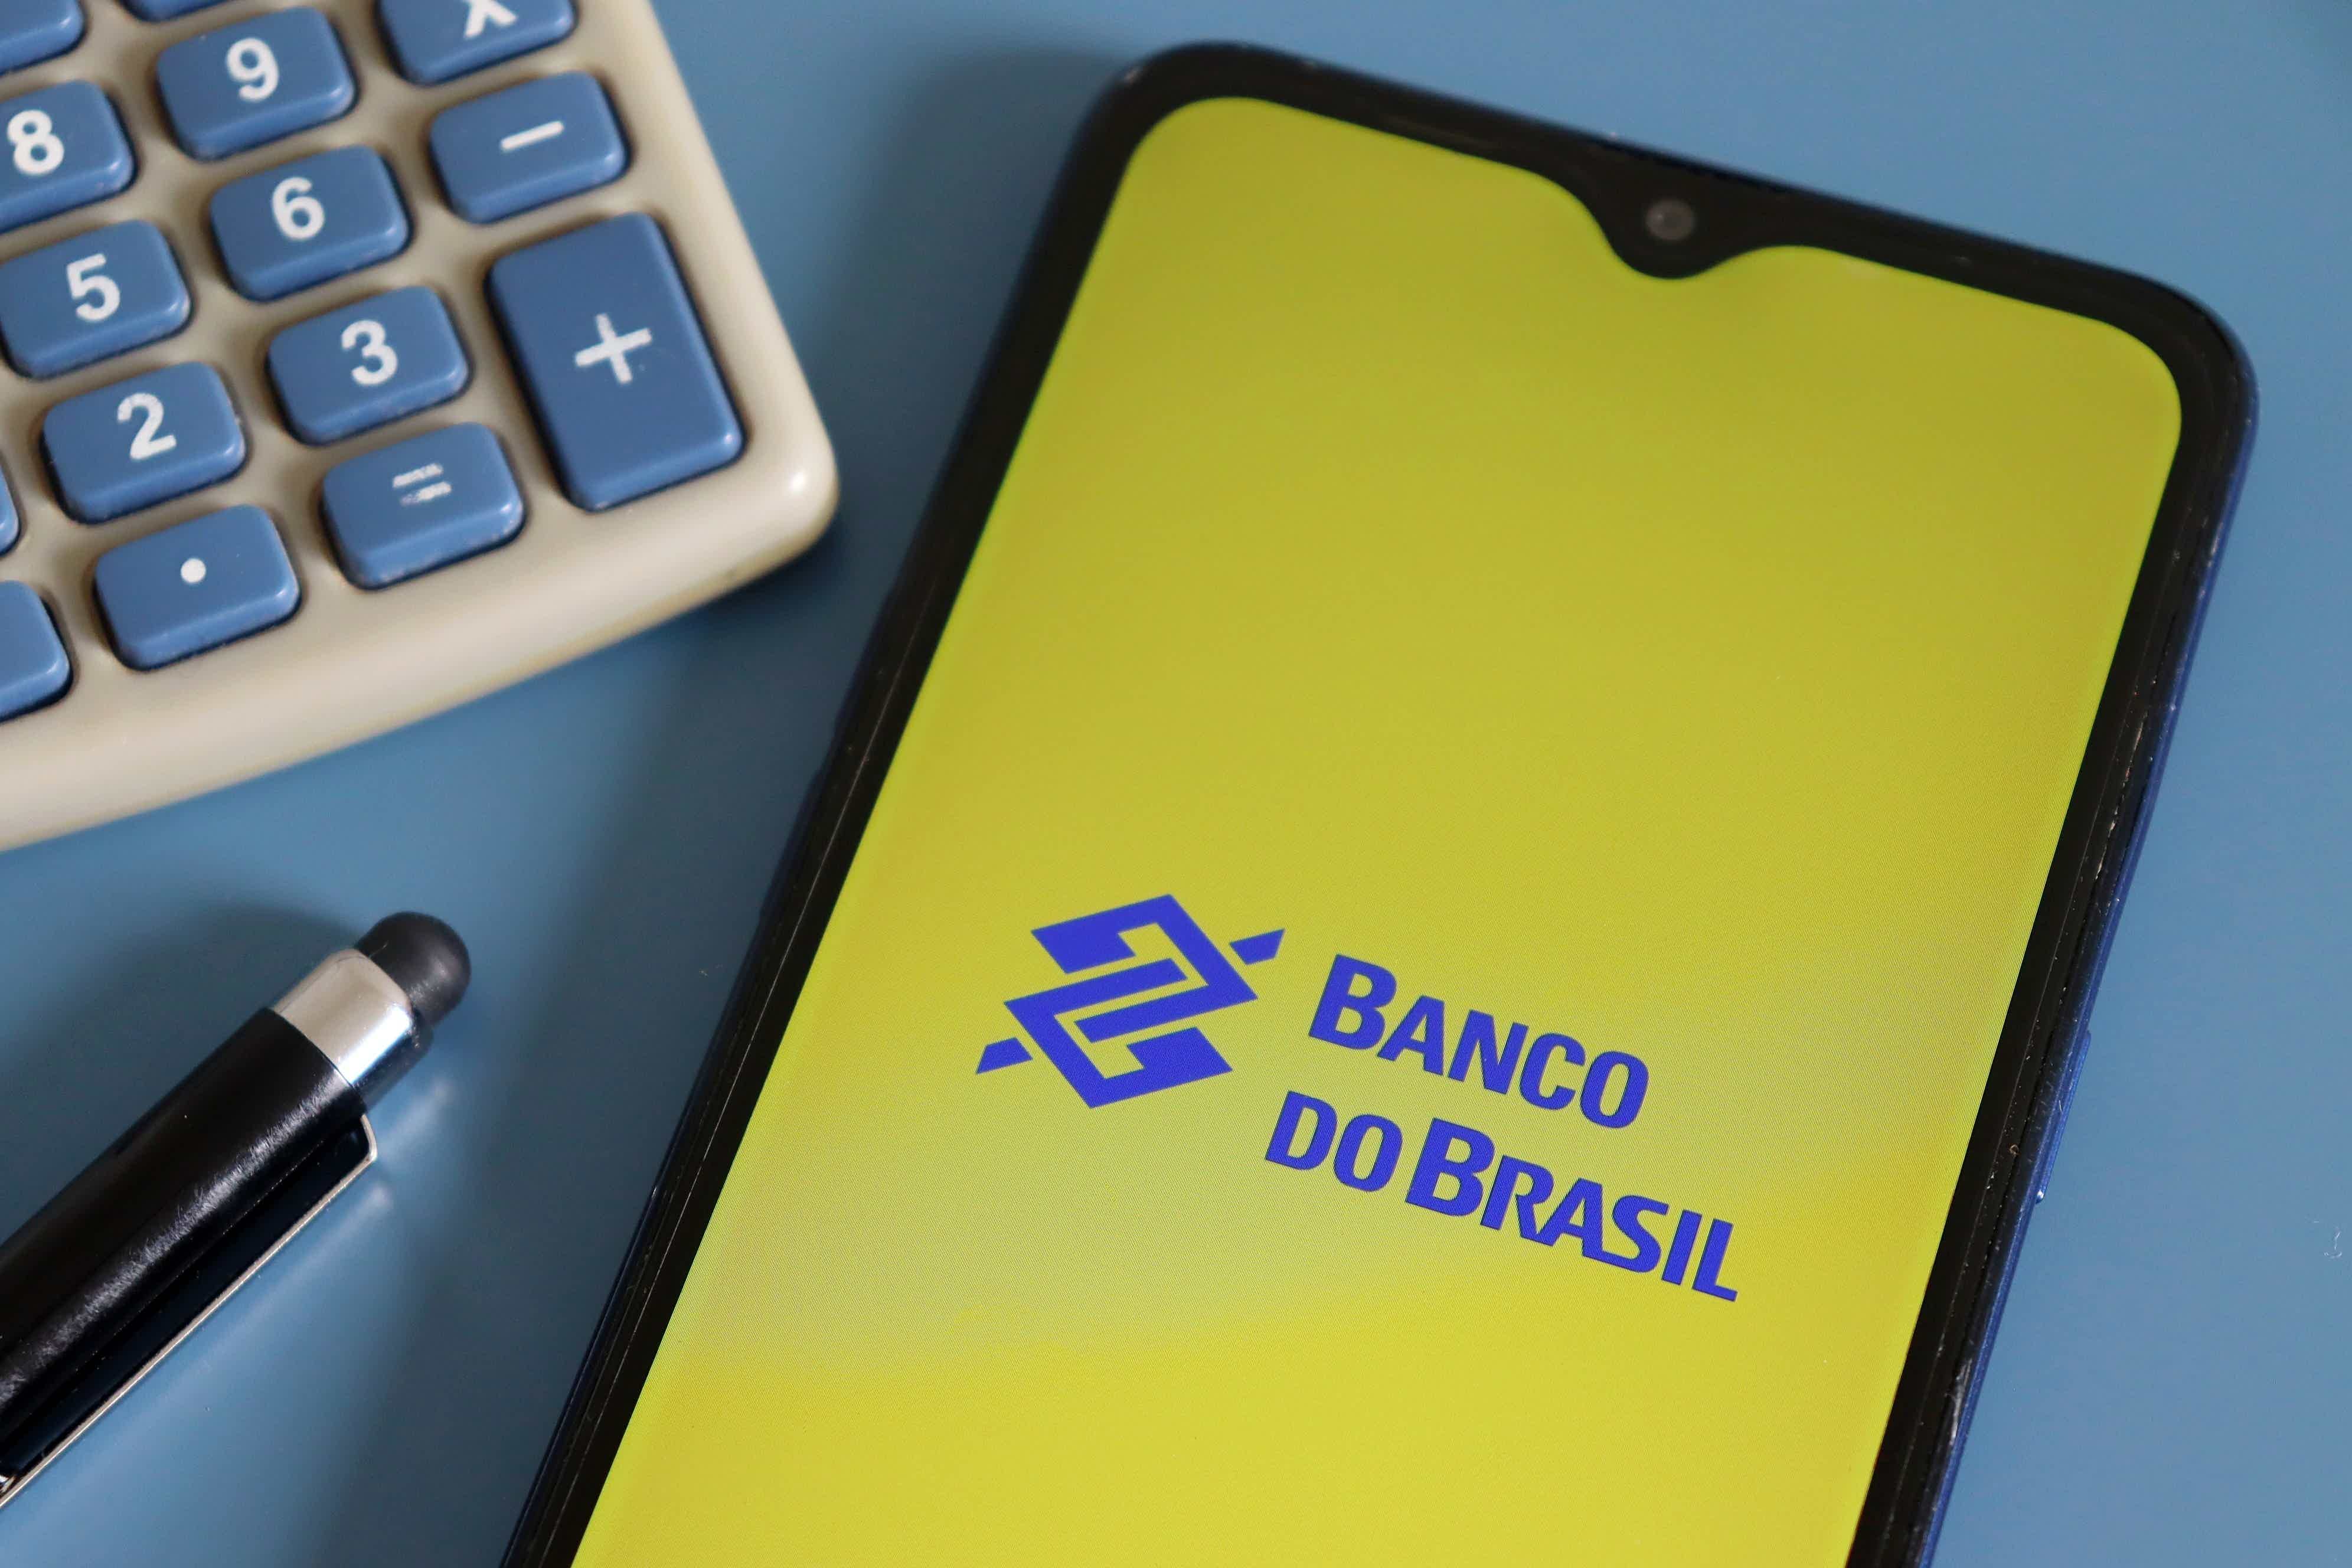 Tela de um celular mostransdo a logo do brasil com uma calculadora ao seu lado.